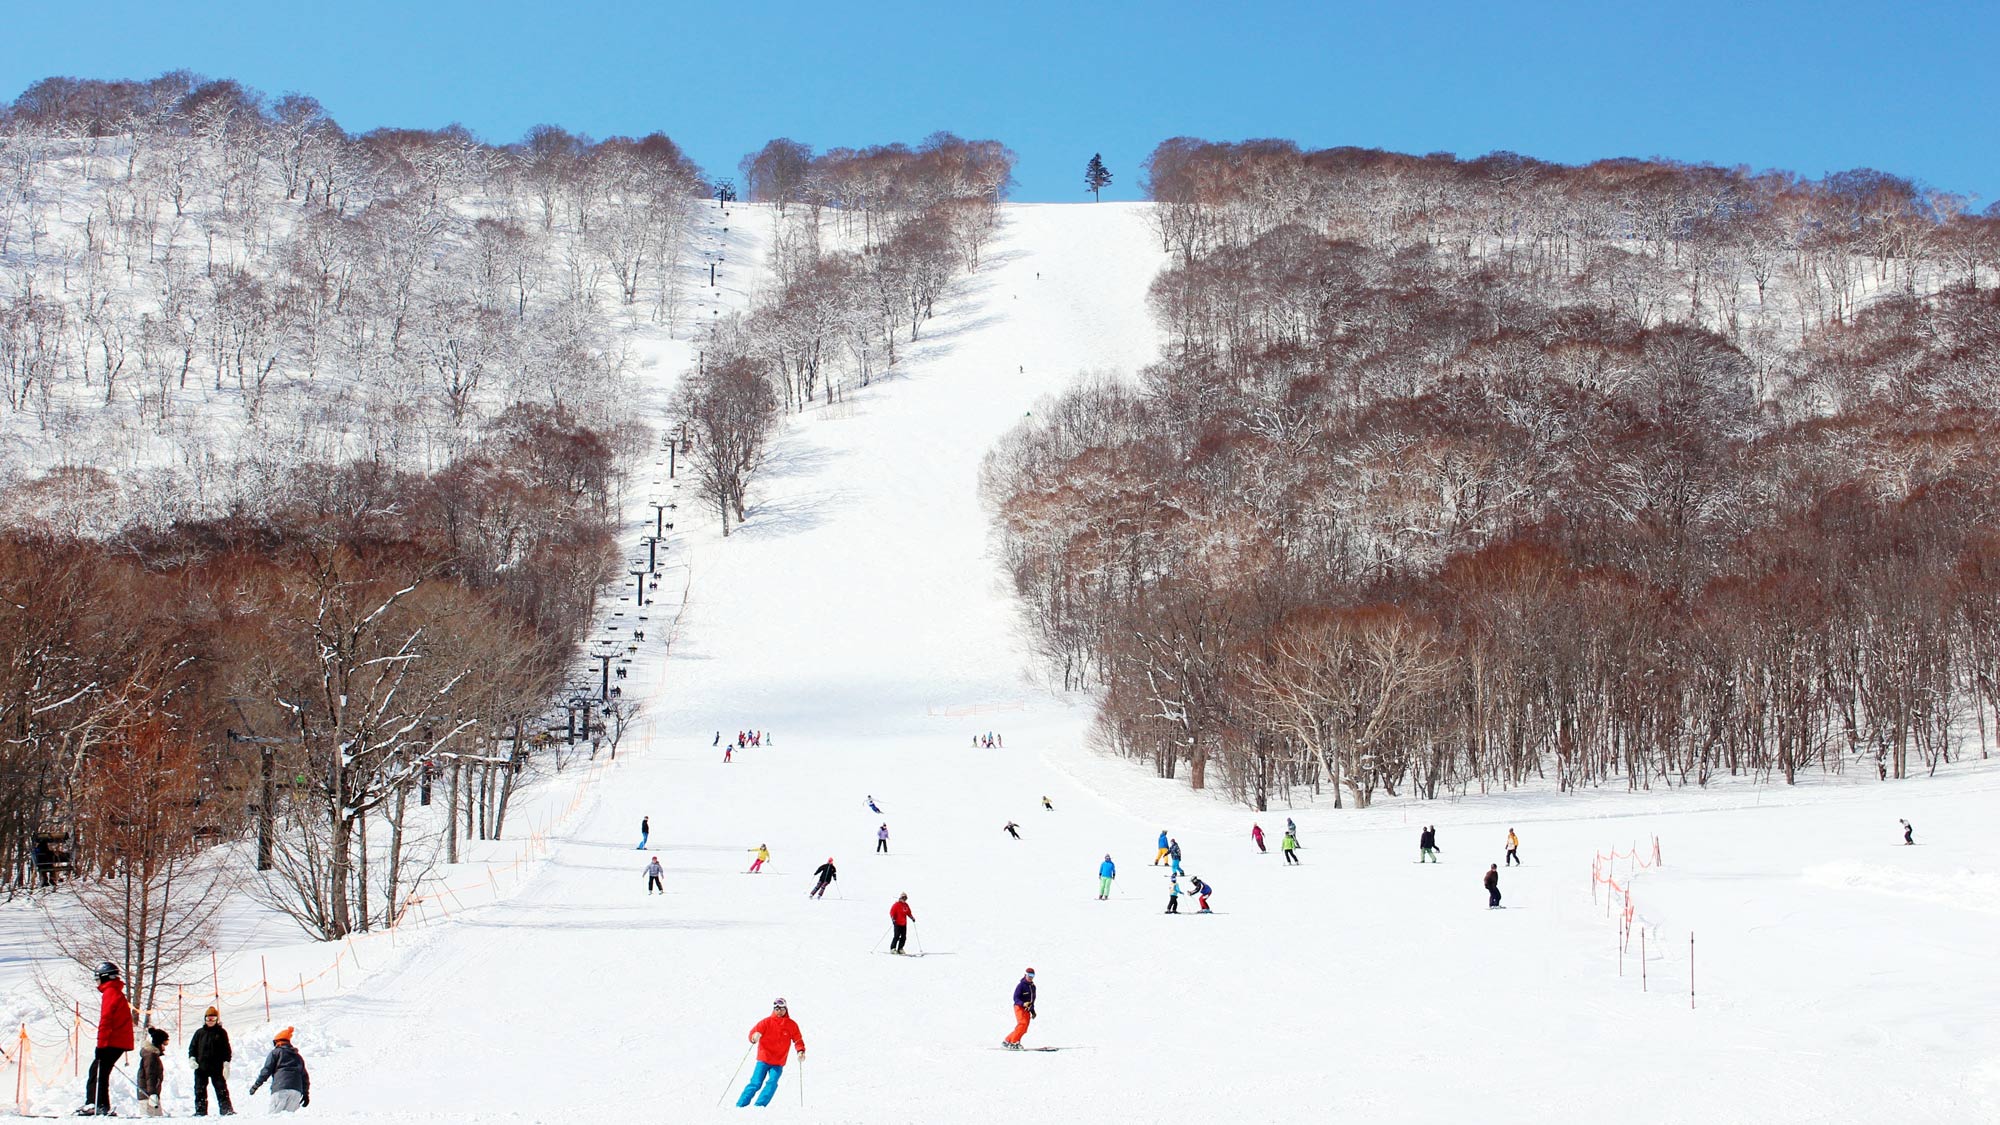 【下倉スキー場】天気のいい日に青と白の世界で楽しむスキーは格別です。